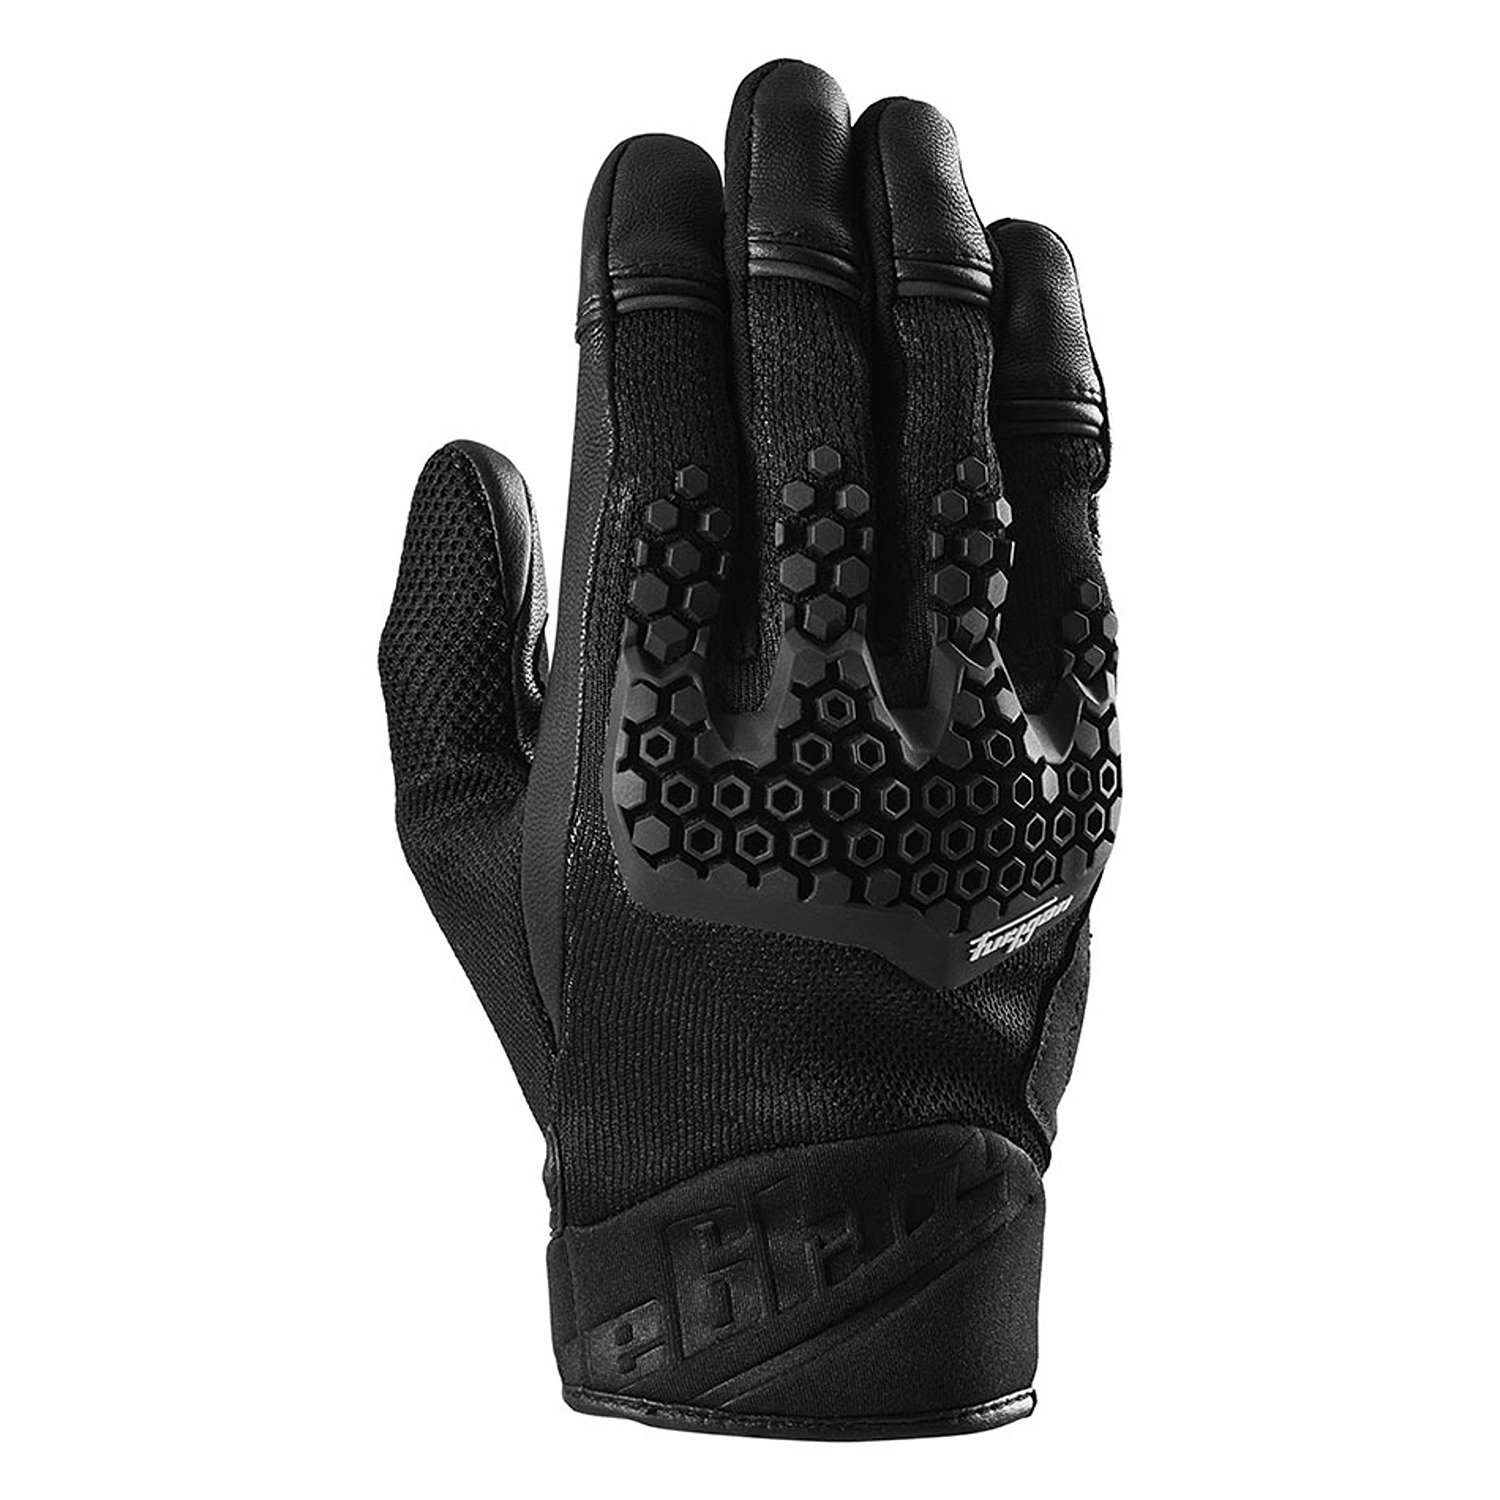 Image of Furygan Jack Gloves Black Size S EN